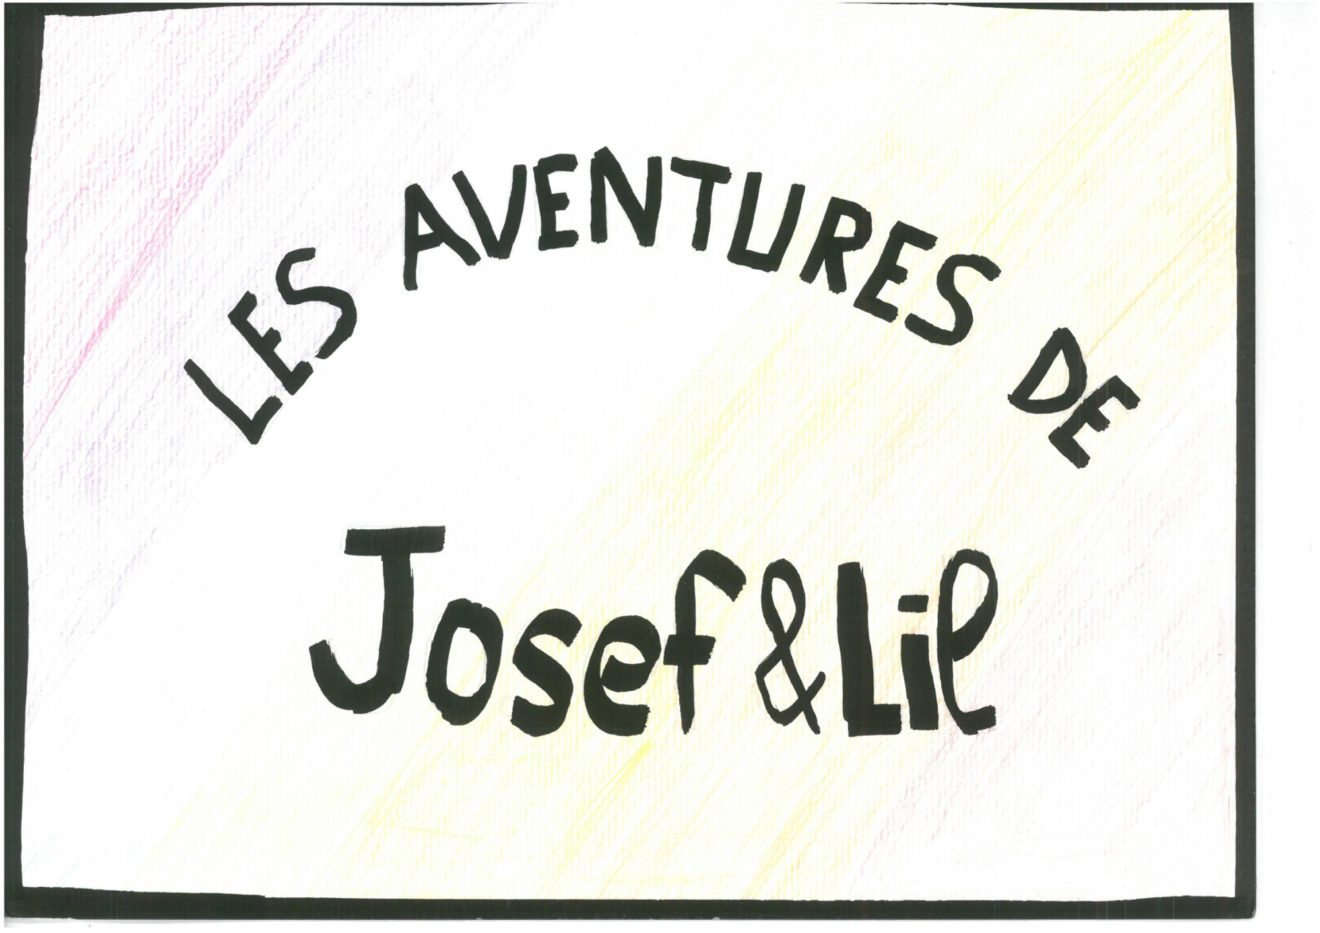 Les aventures de Josef et Lil